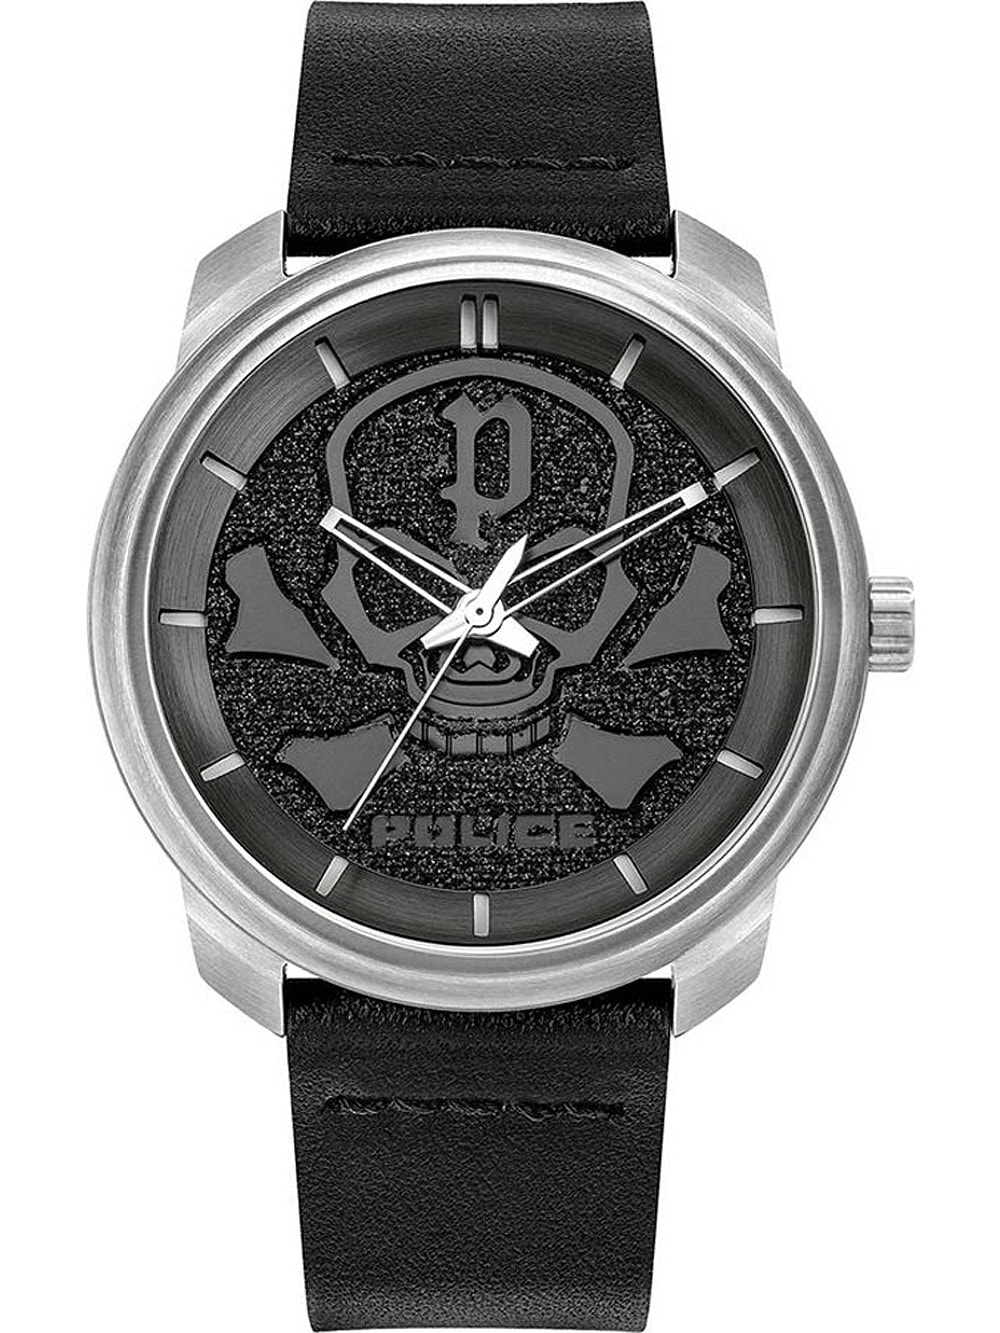 Мужские наручные часы с черным кожаным ремешком  Police PL15714JS.02 Bleder mens 44mm 3ATM